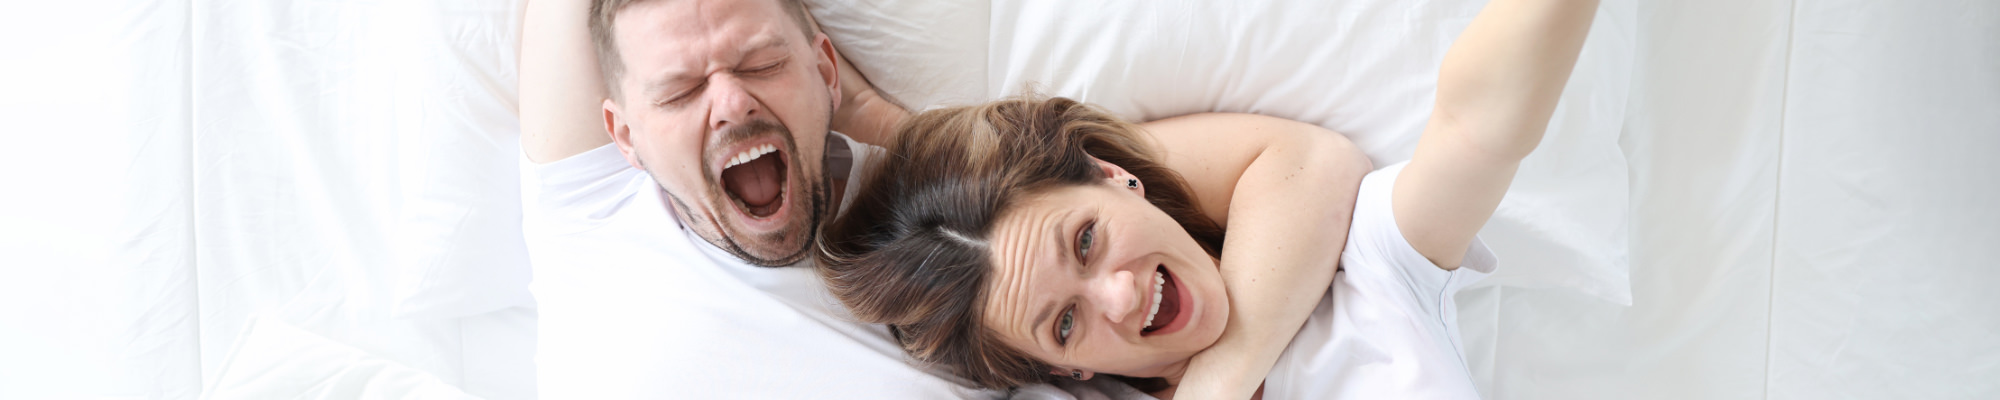 L’homme et la femme se trouvent ensemble dans un joli lit d’hôtel